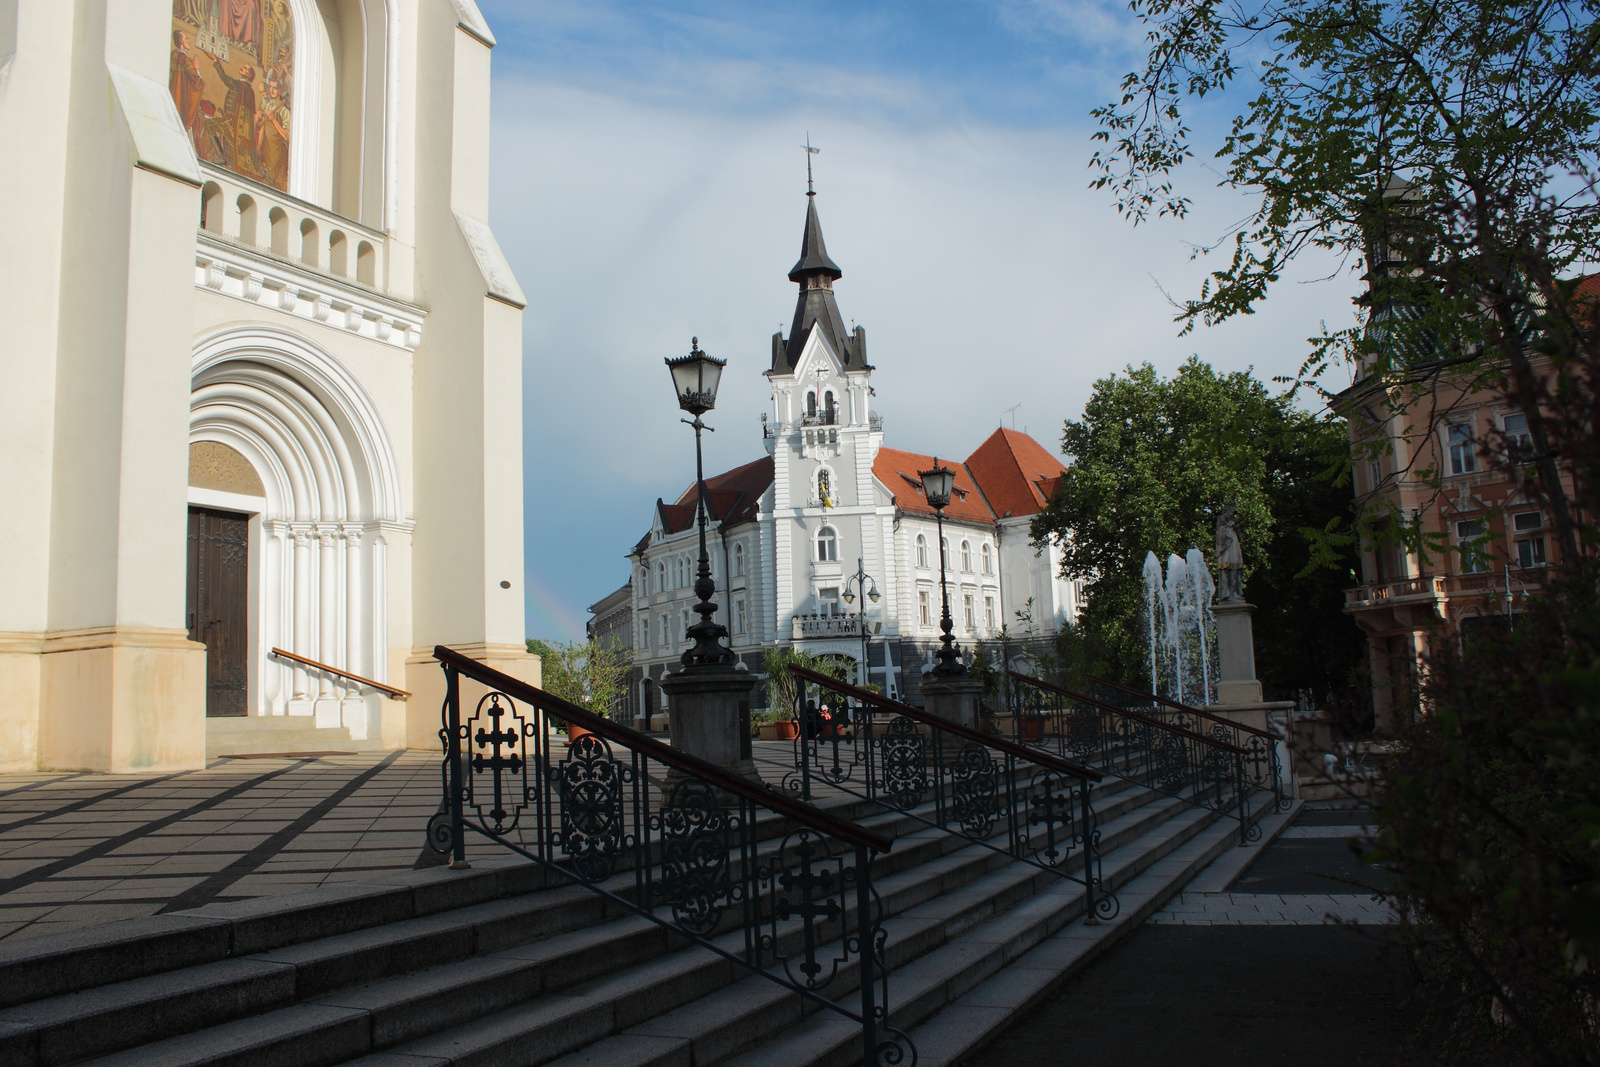 Pillantás a városháza felé - Kaposvár